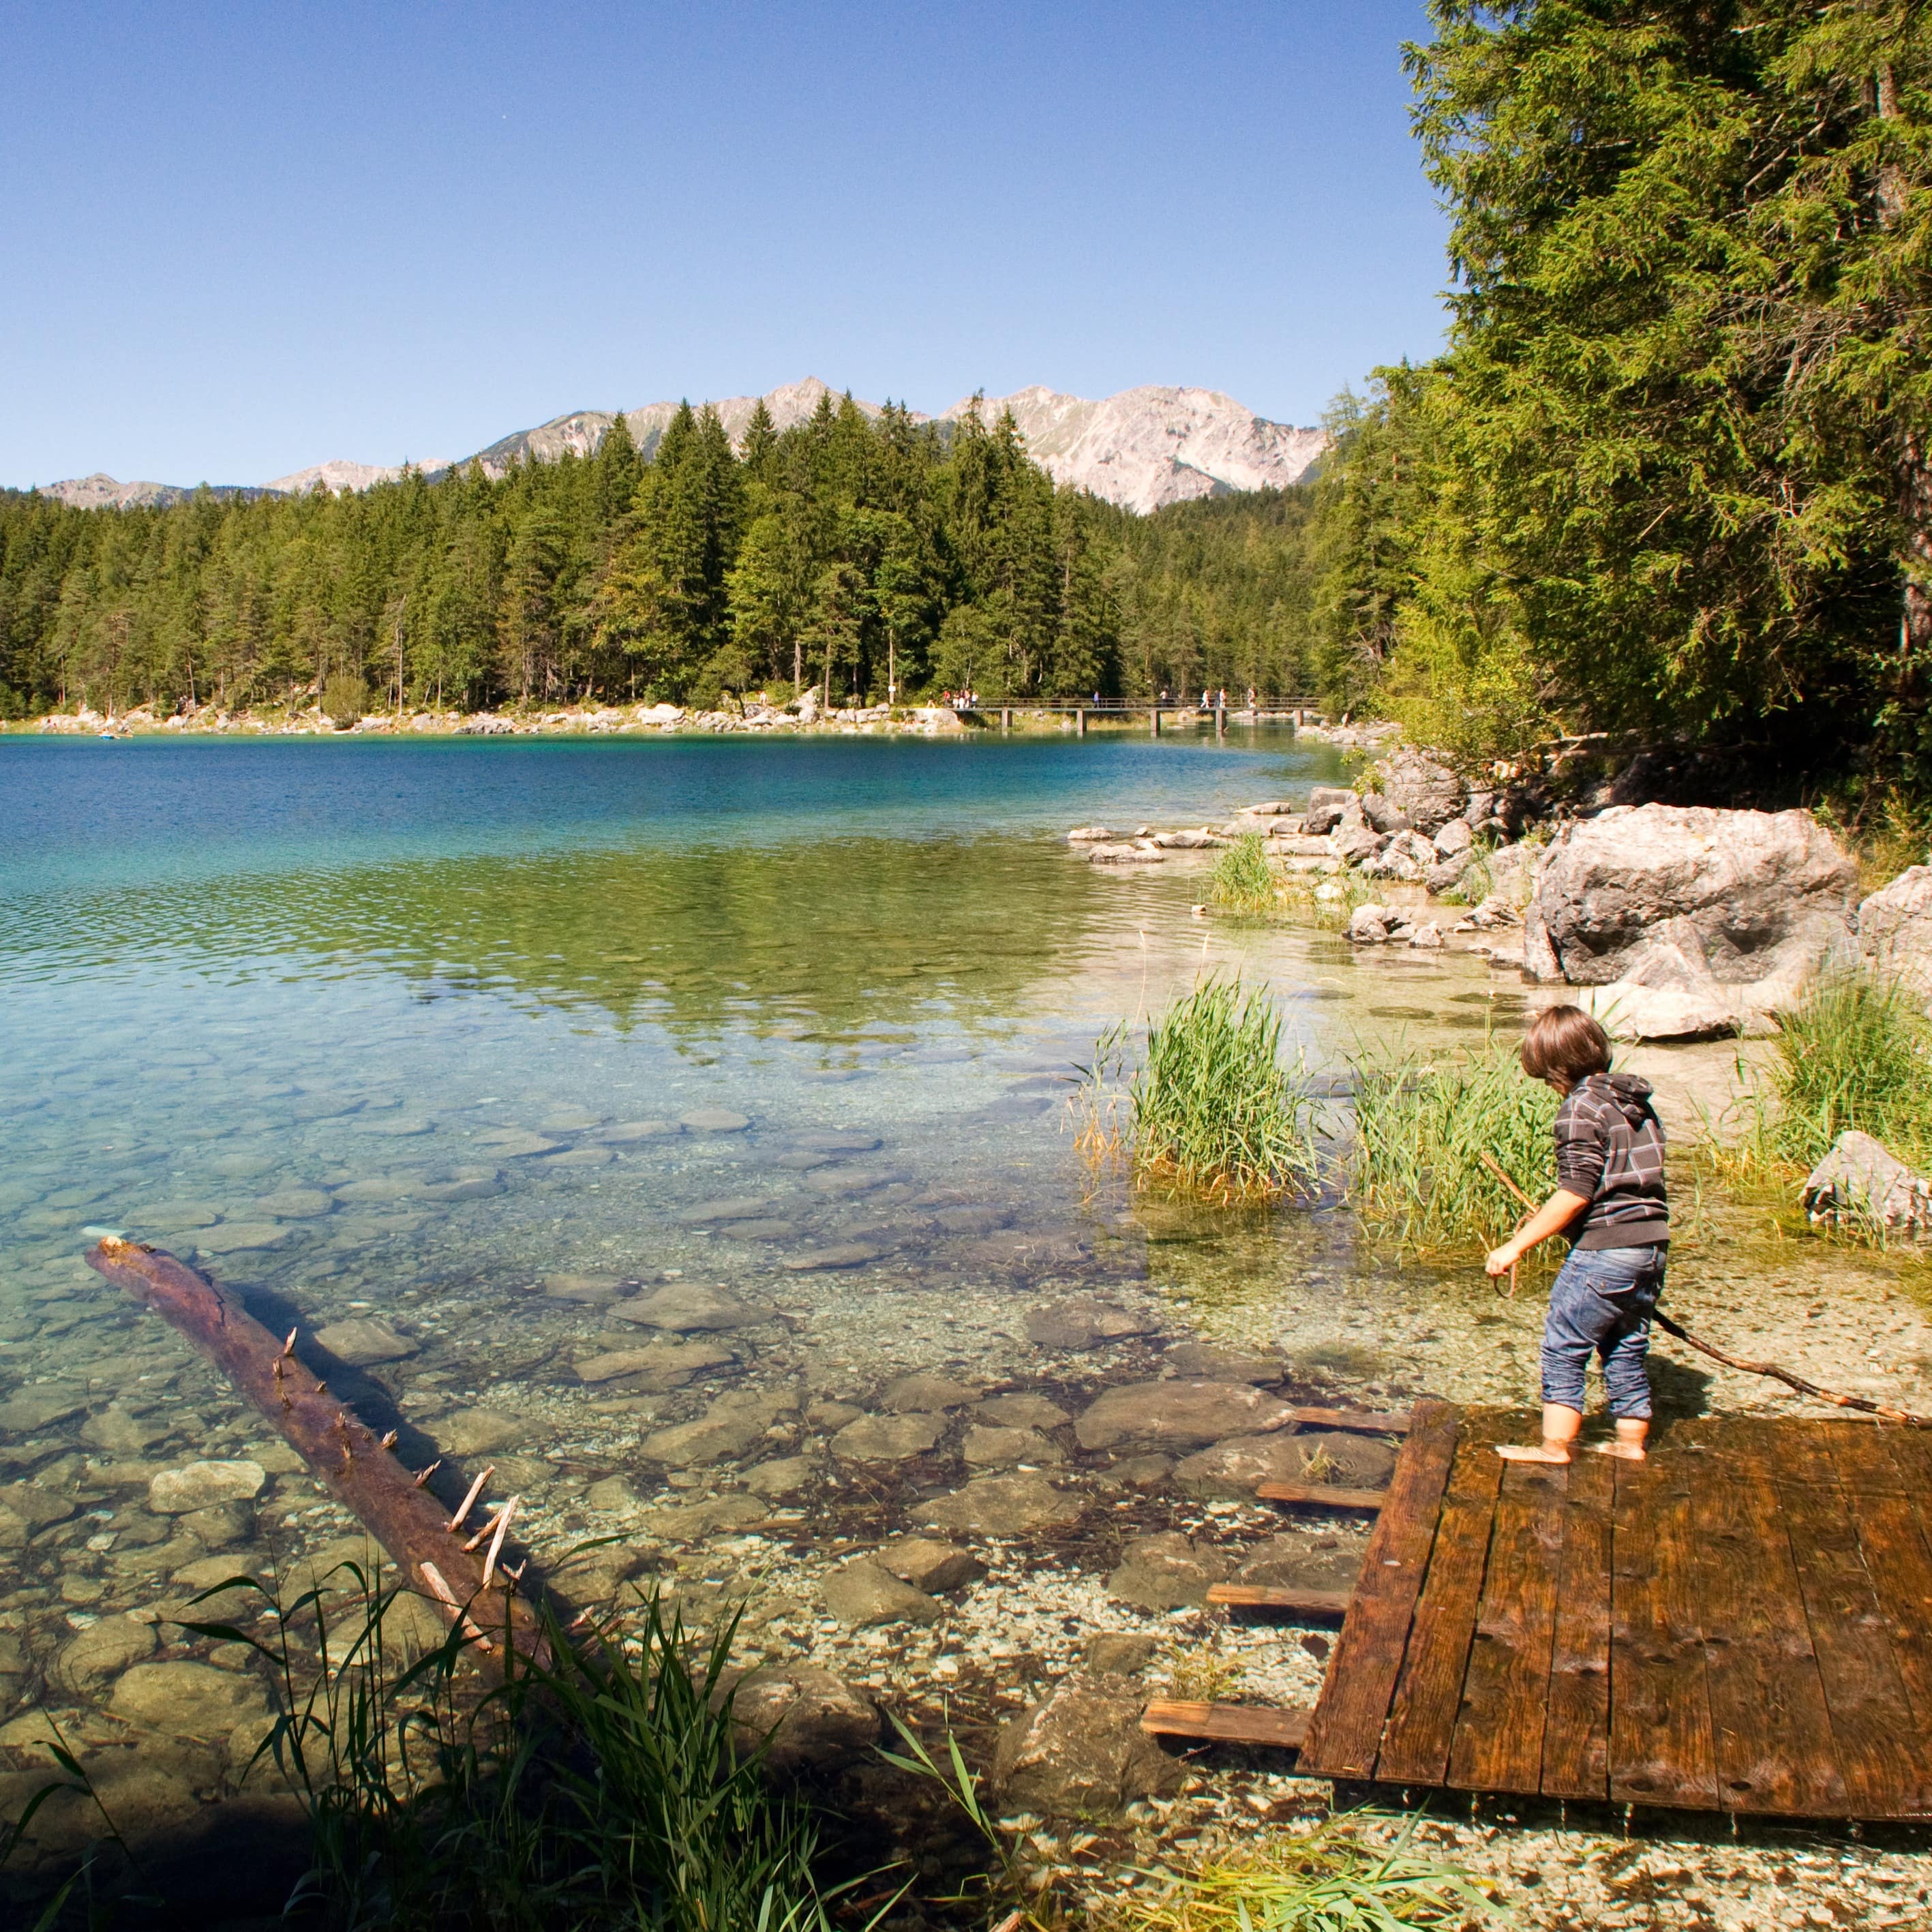 Ein kleiner Junge auf Holzplanken und mit einem Stock in der Hand am Wasser des Eibsee.